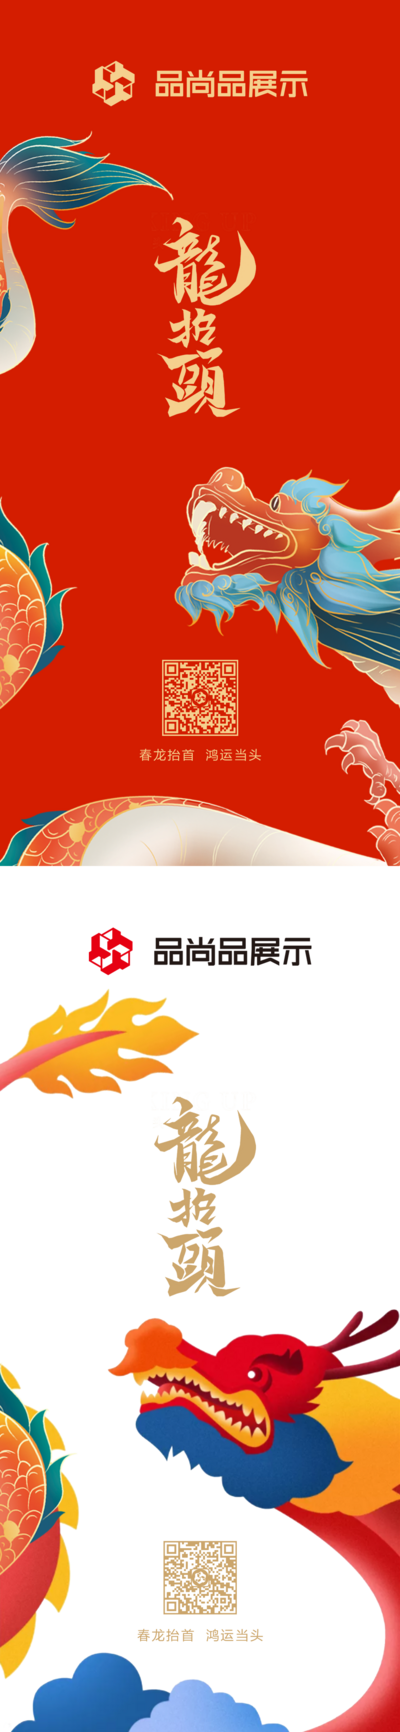 南门网 海报 房地产 中国传统节日 龙抬头 二月二 中式 龙